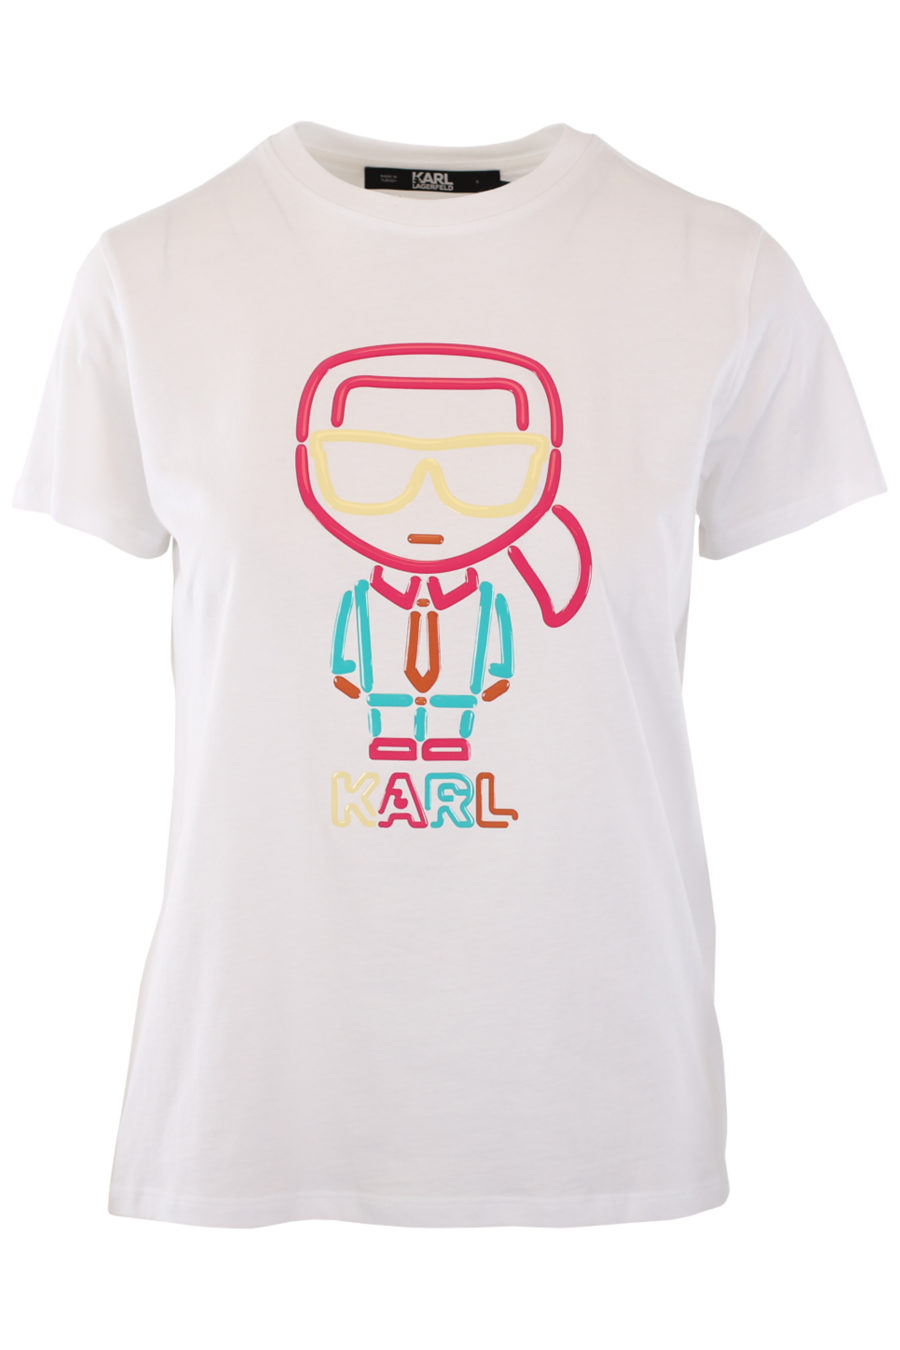 Camiseta blanca con logo "karl" multicolor de goma - IMG 0796